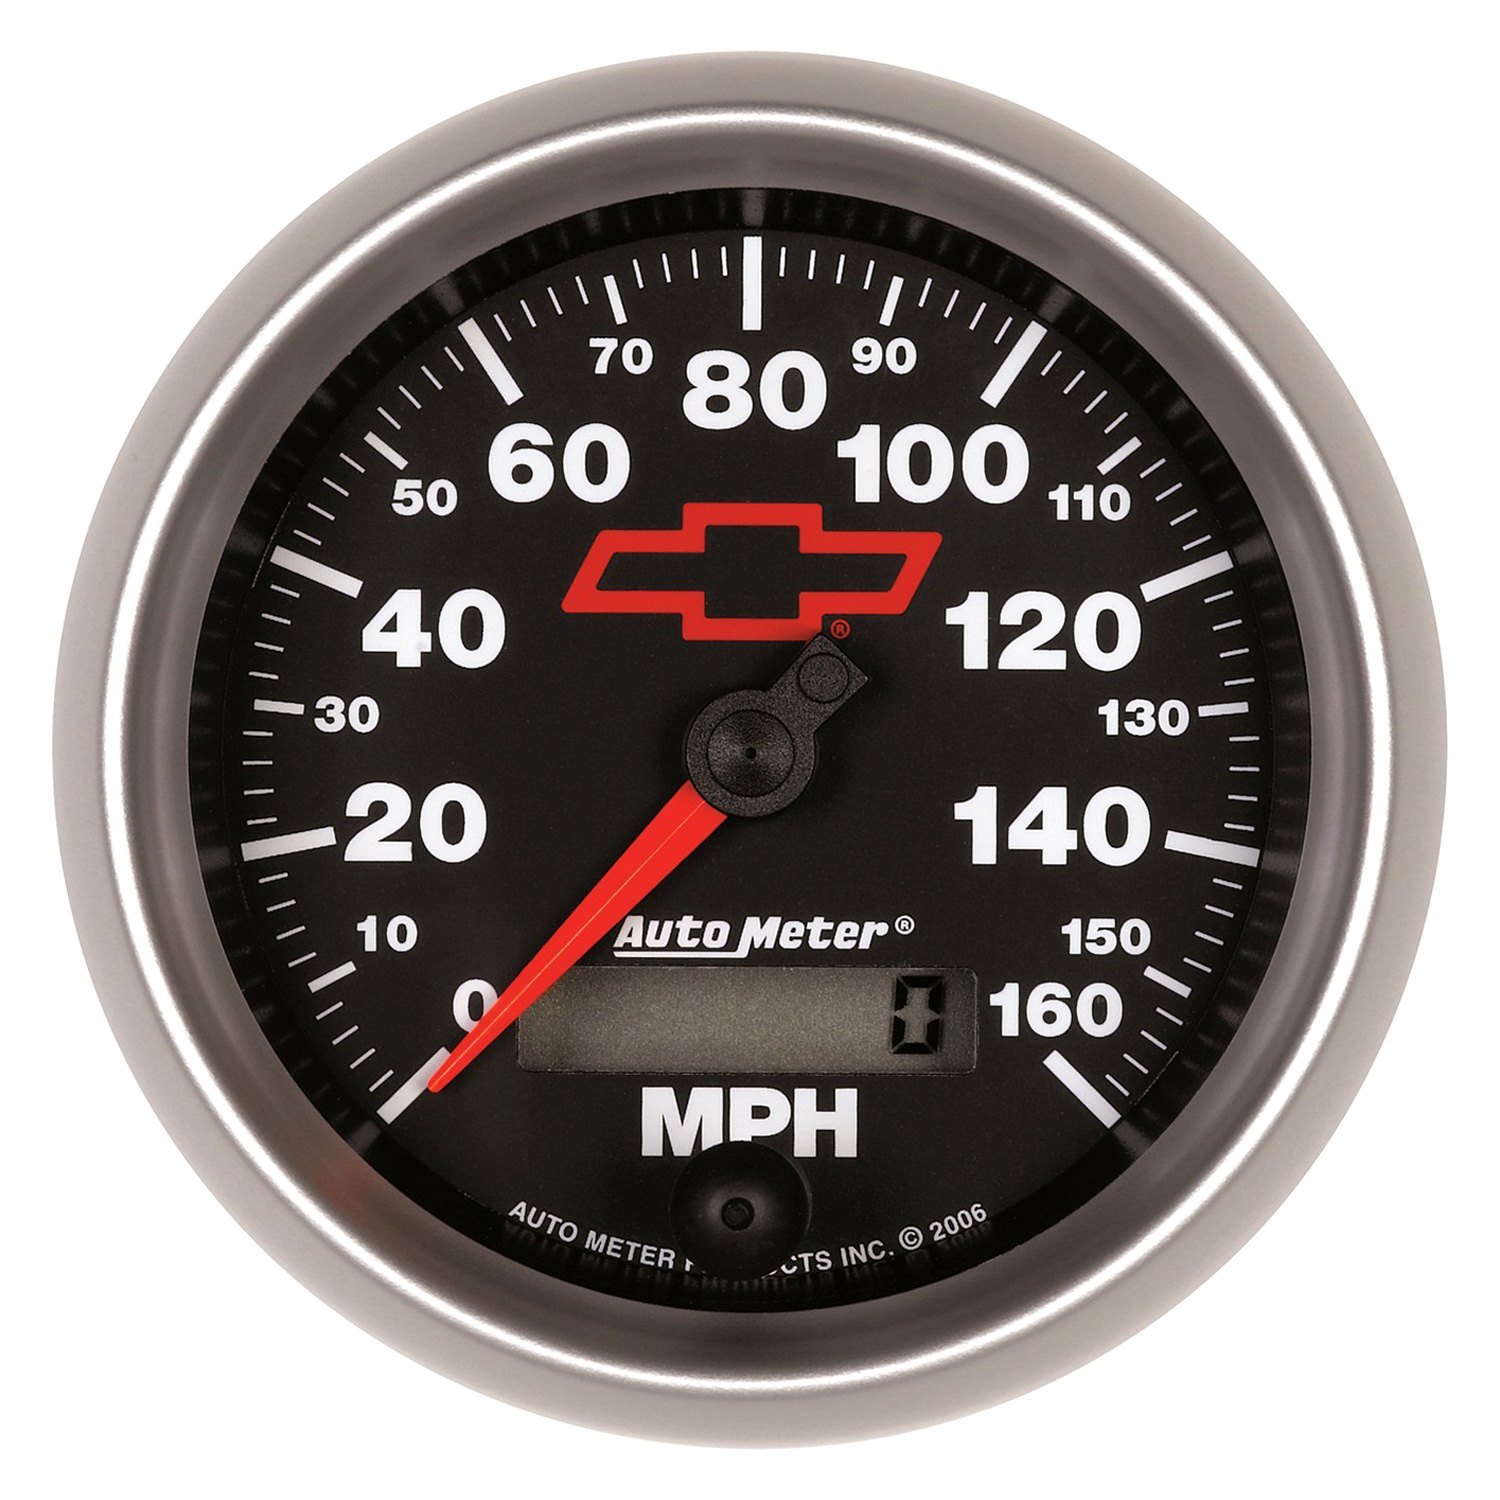 Speedometer 3.0. AUTOGAUGE спидометр 95. CBR 600 f3 спидометр. Gauge Meter. 150 Meter.